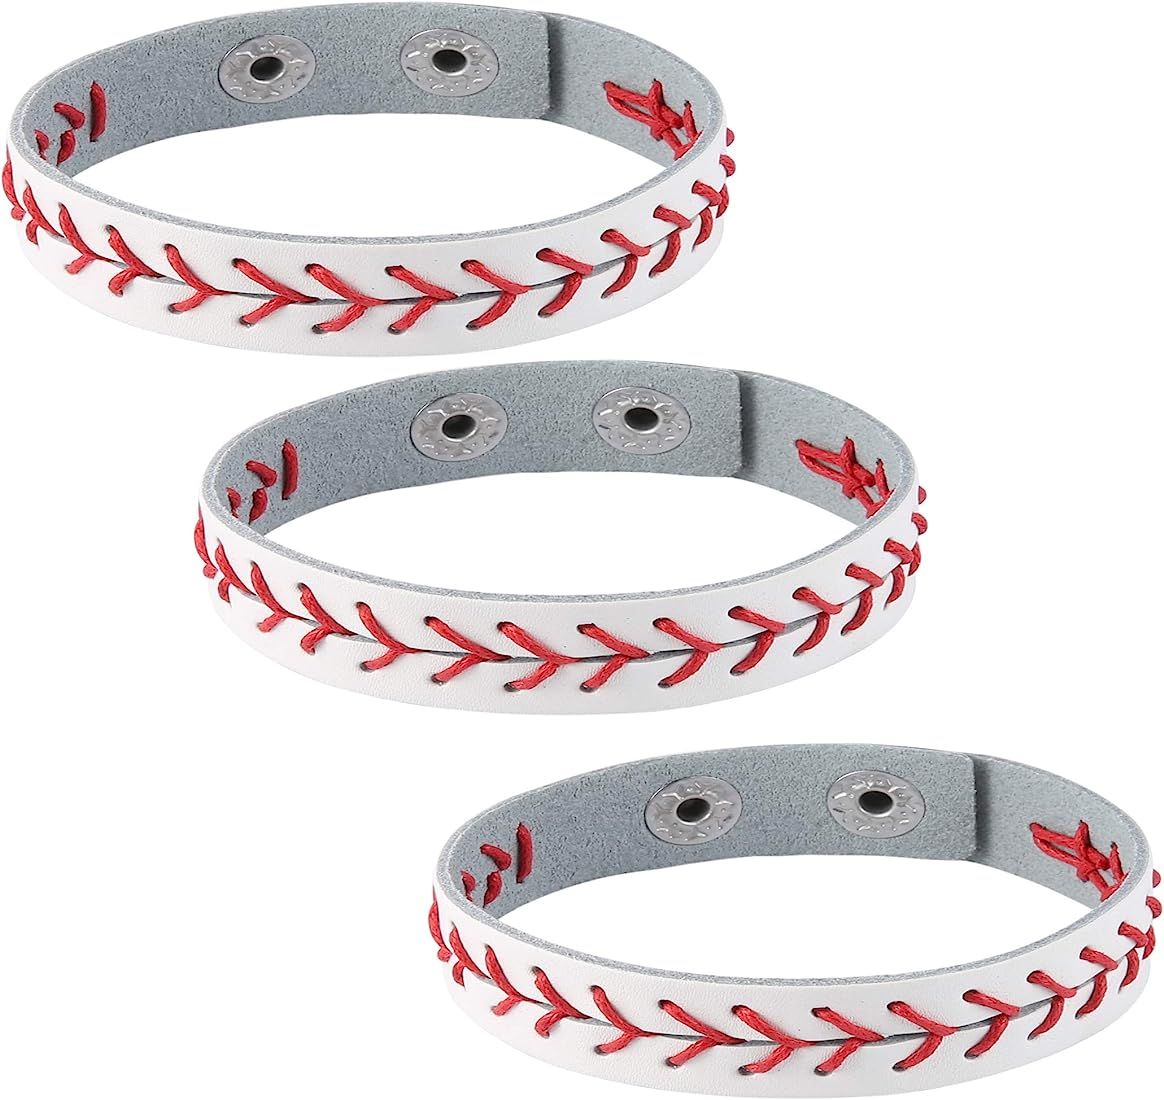 HZMAN 3Pcs Genuine Leather Baseball Bracelets by Athletes Bangle Cuff Wristband, White Black Yell... | Amazon (US)